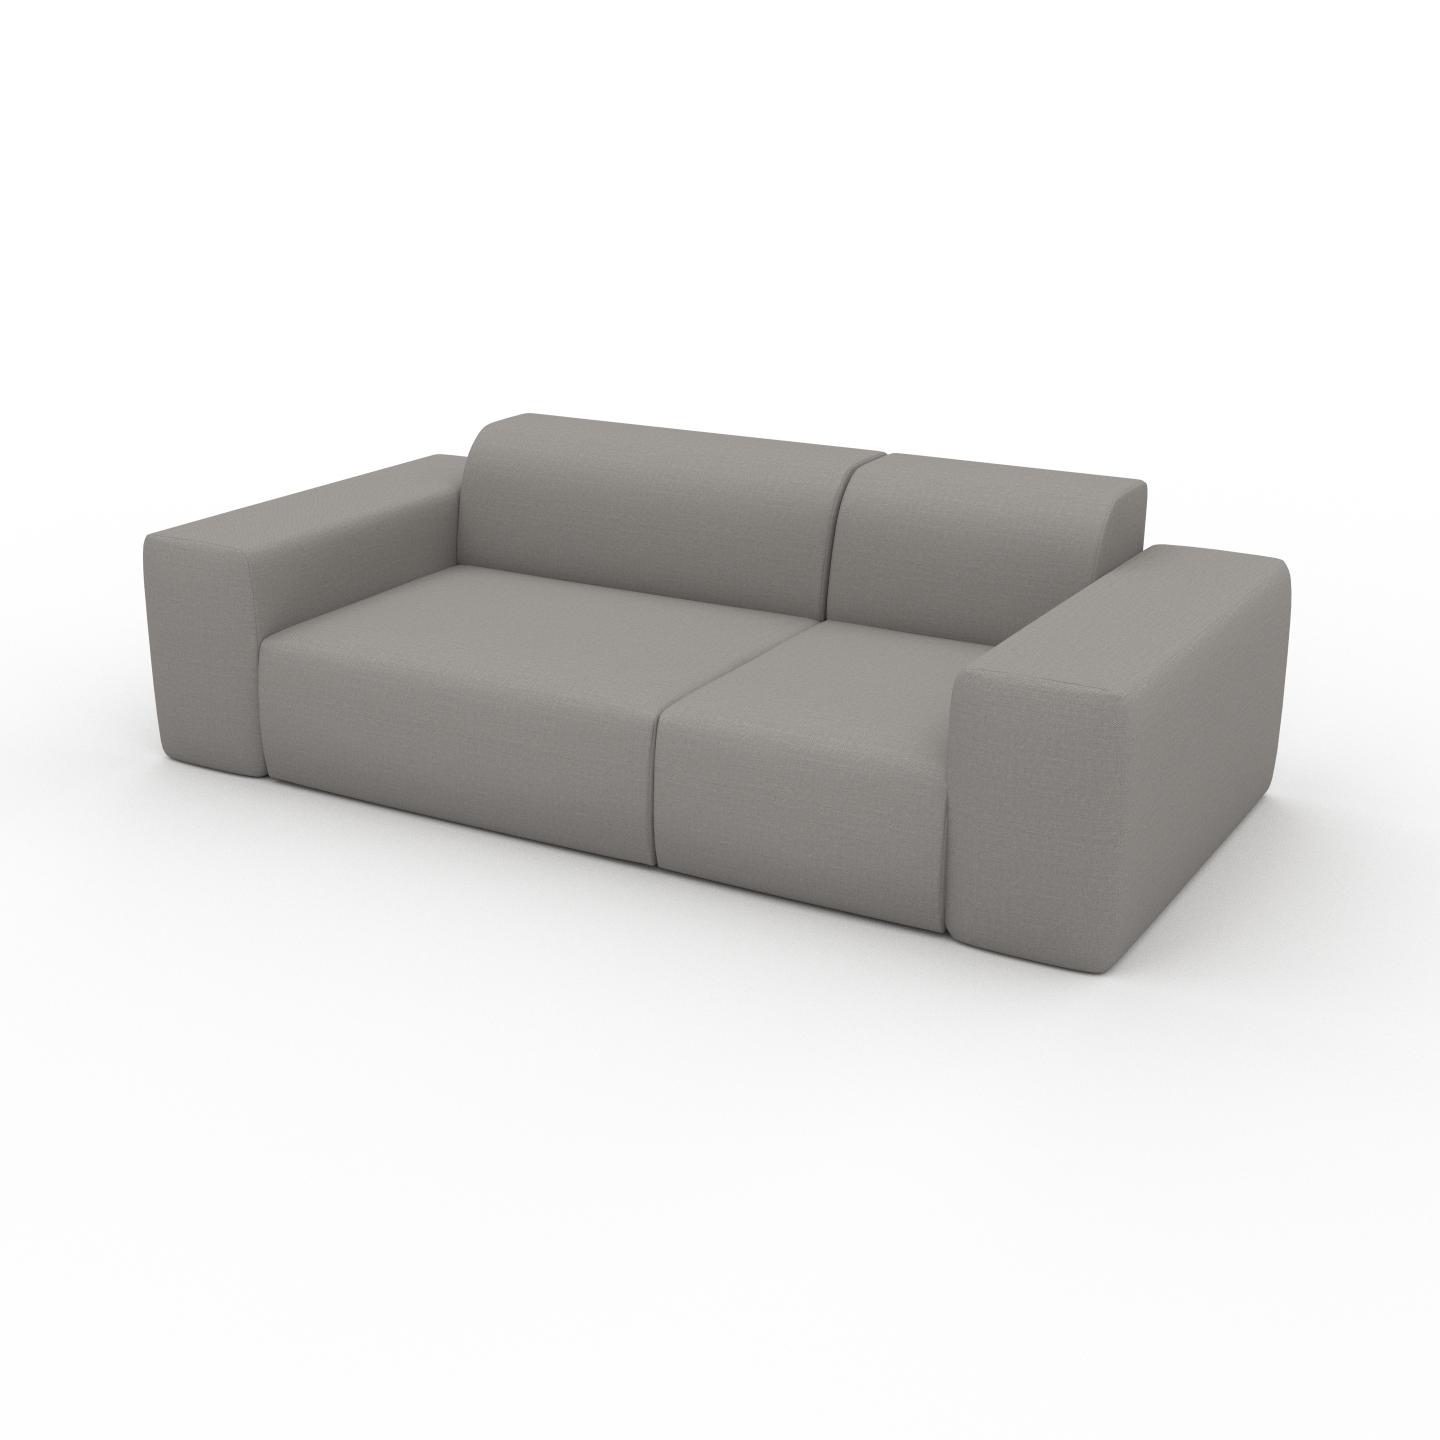 MYCS Sofa Sandgrau - Moderne Designer-Couch: Hochwertige Qualität, einzigartiges Design - 226 x 72 x 107 cm, Komplett anpassbar